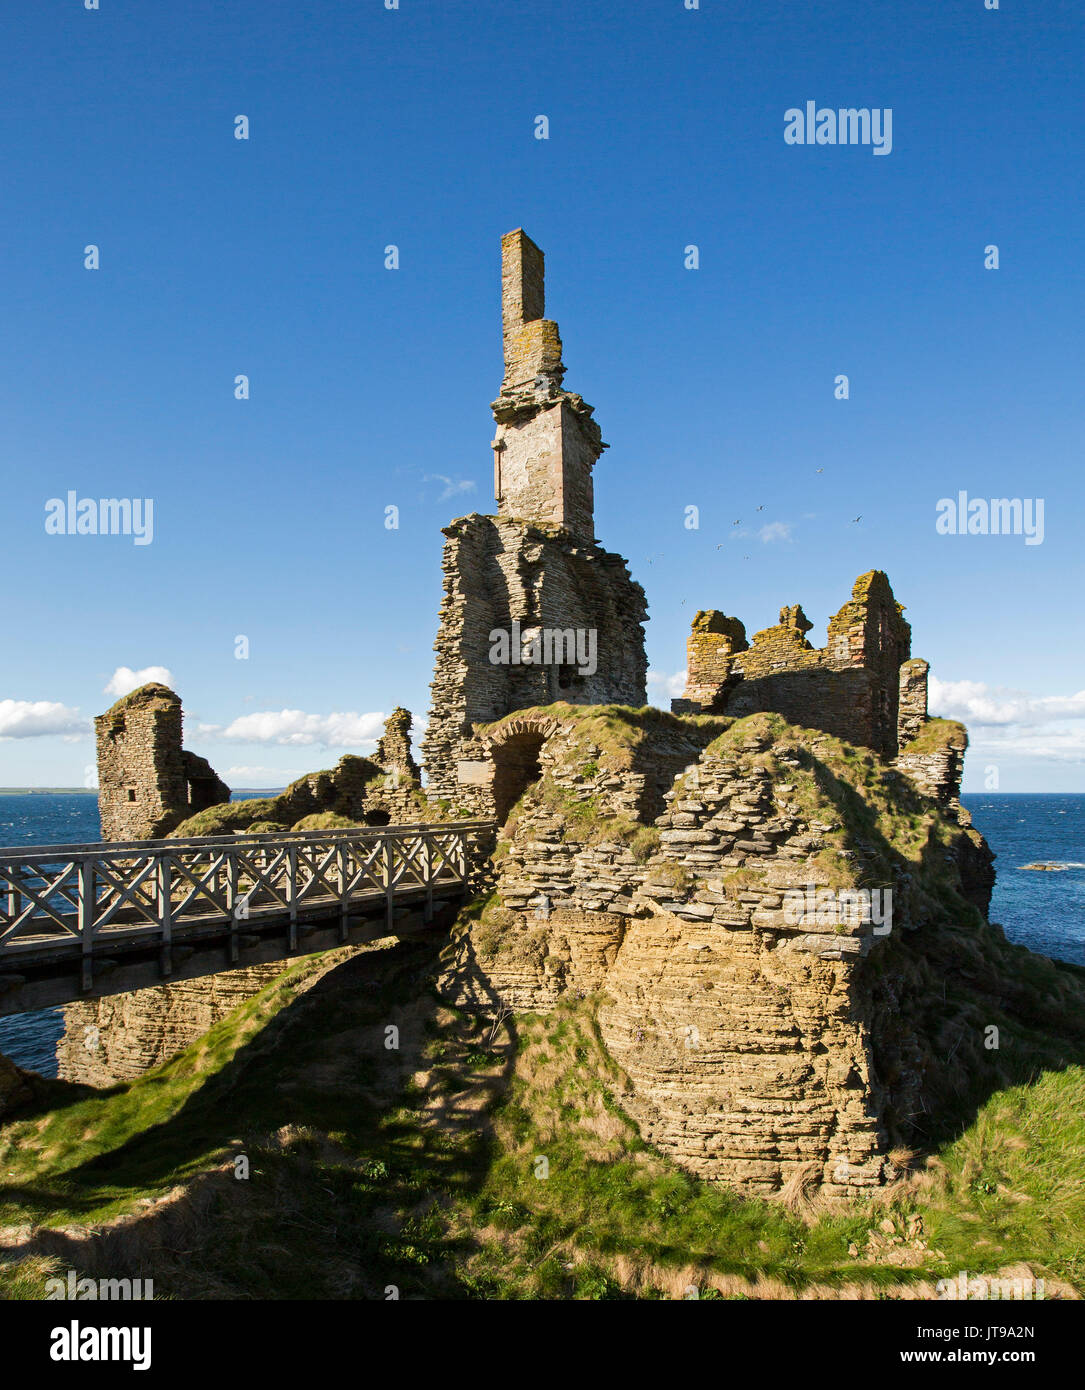 Ruines de Sinclair Girnigoe castle on clifftop avec fond bleu océan sous ciel bleu à Noss Head, près de Thurso, Ecosse Banque D'Images